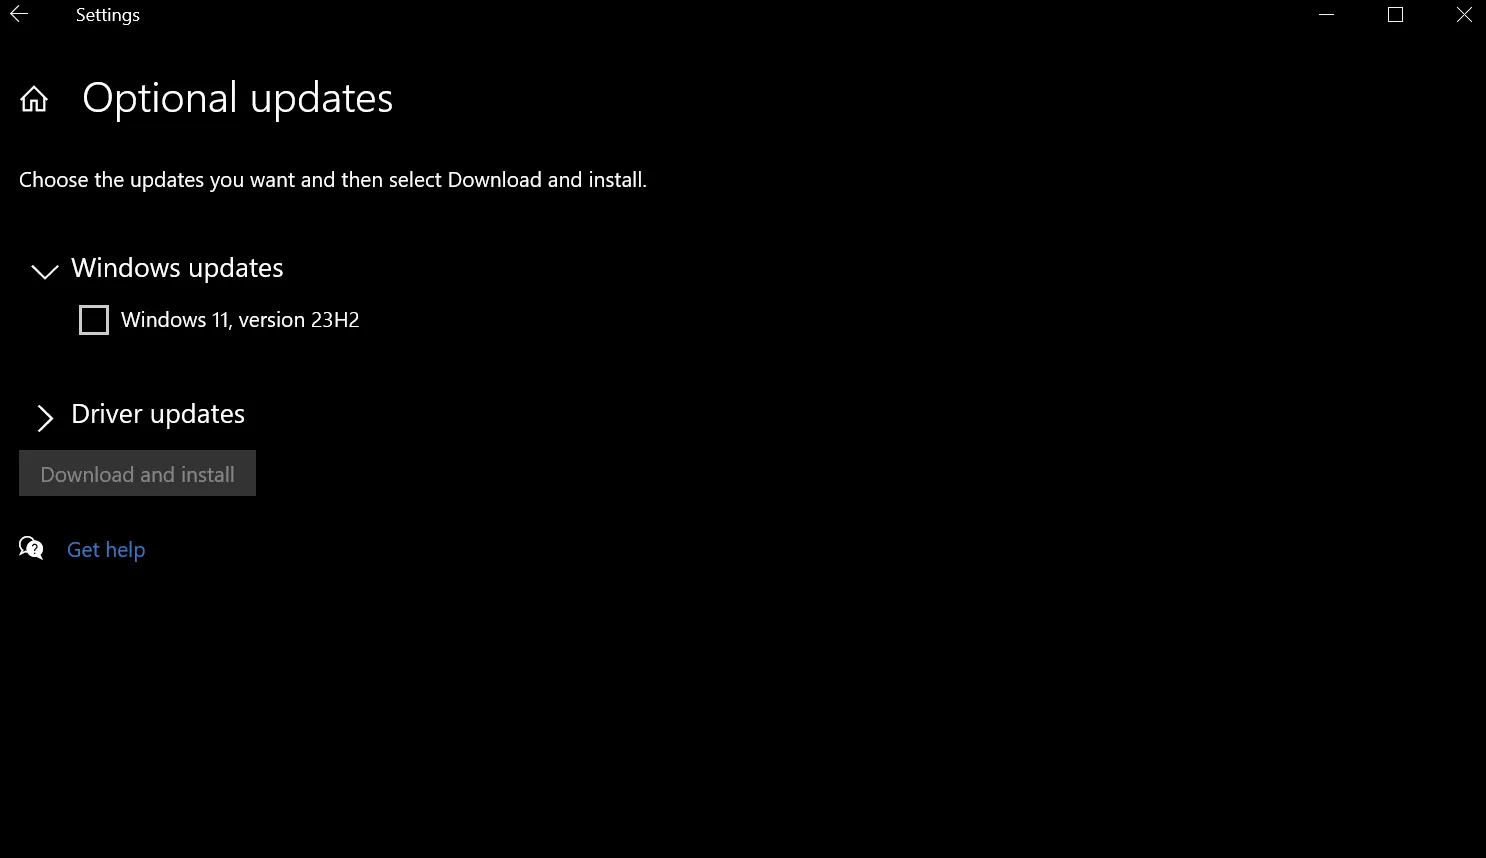 Windows 11 23H2 come aggiornamento opzionale